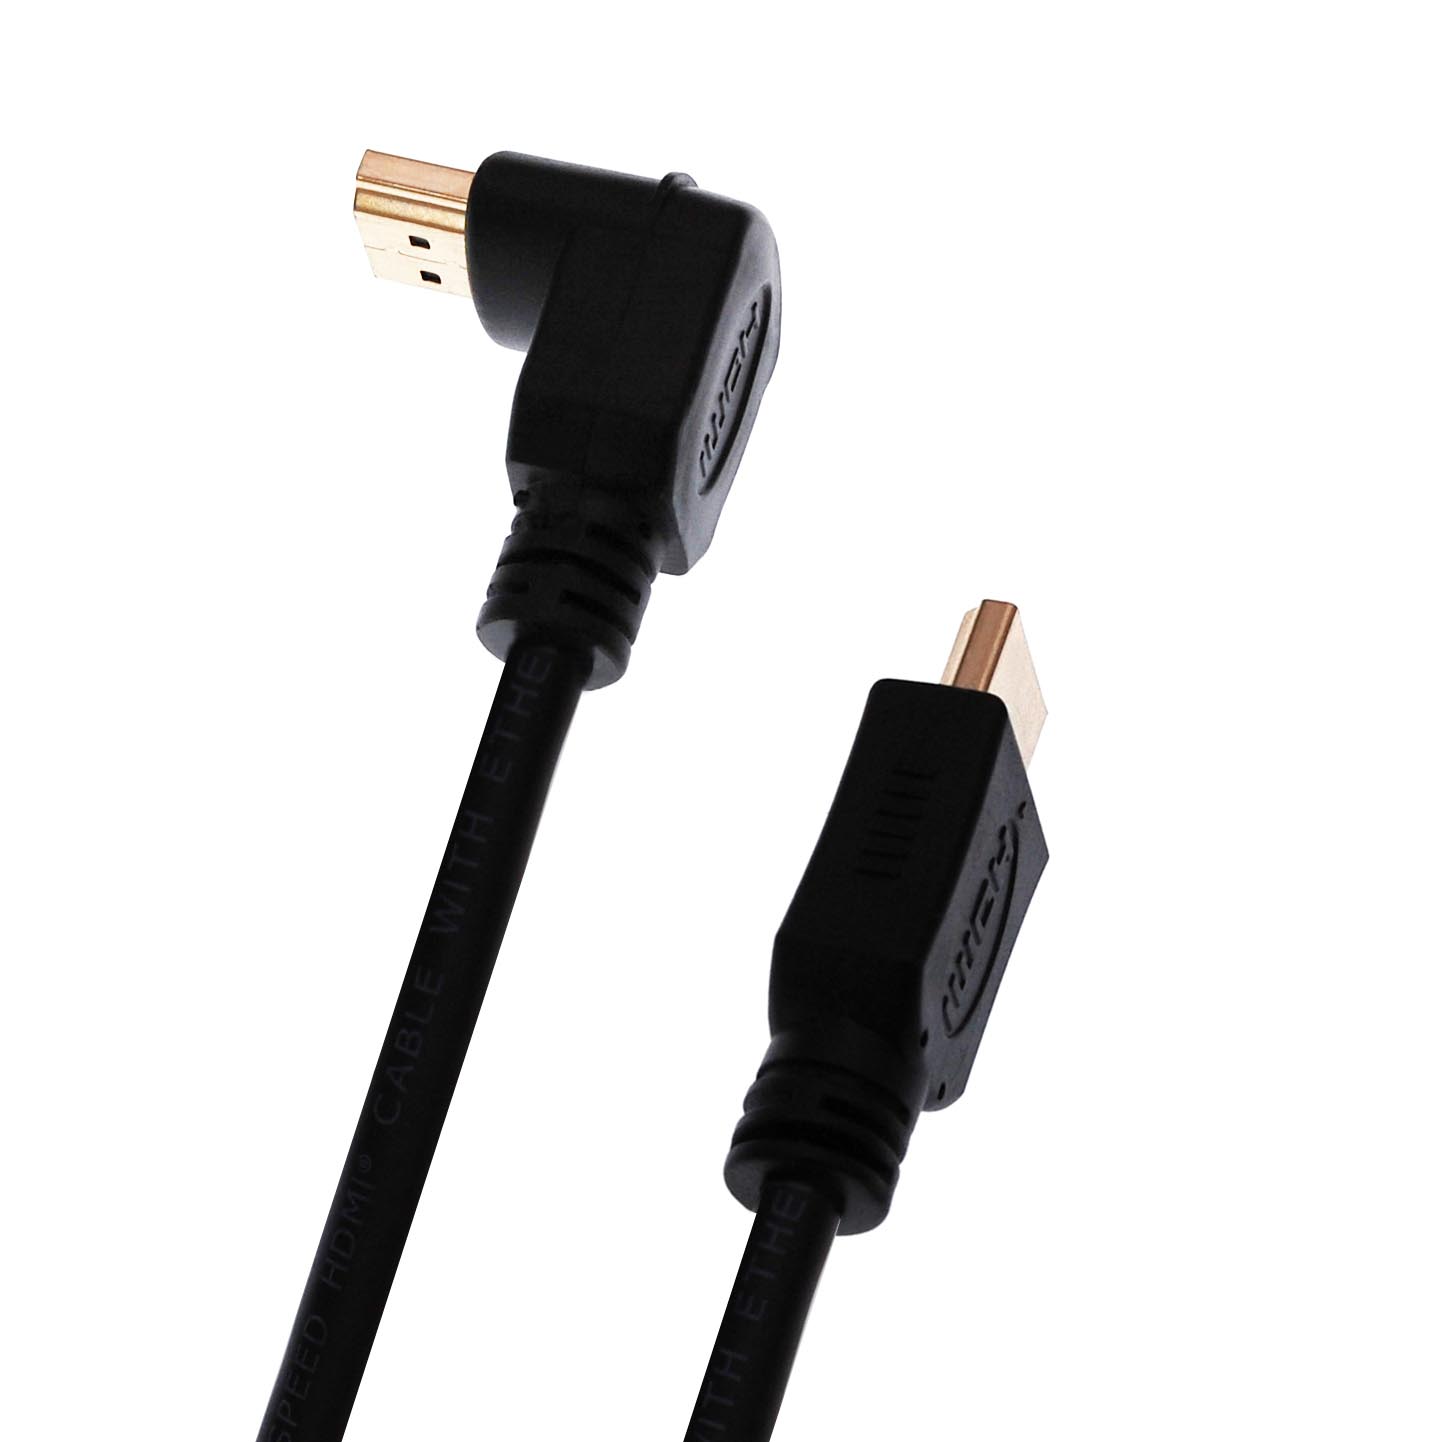 HDMI-Kabel 1.3 mit Winkelstecker in verschiedenen Längen.